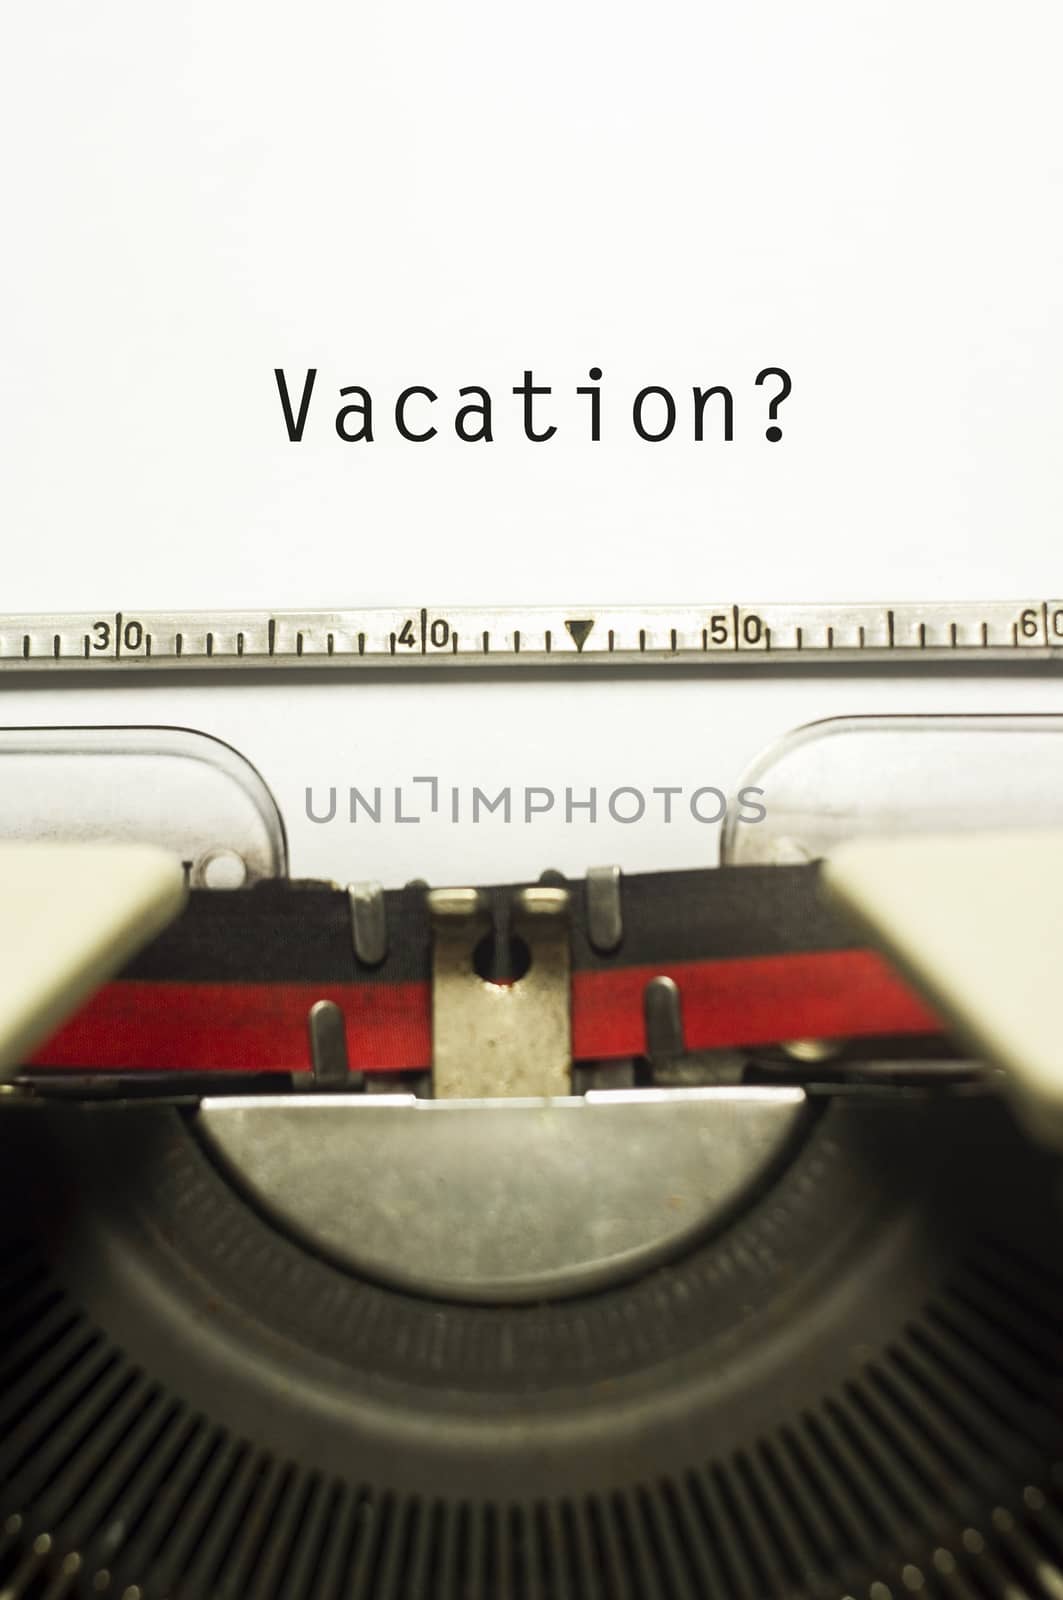 vacations or holidays by mtkang